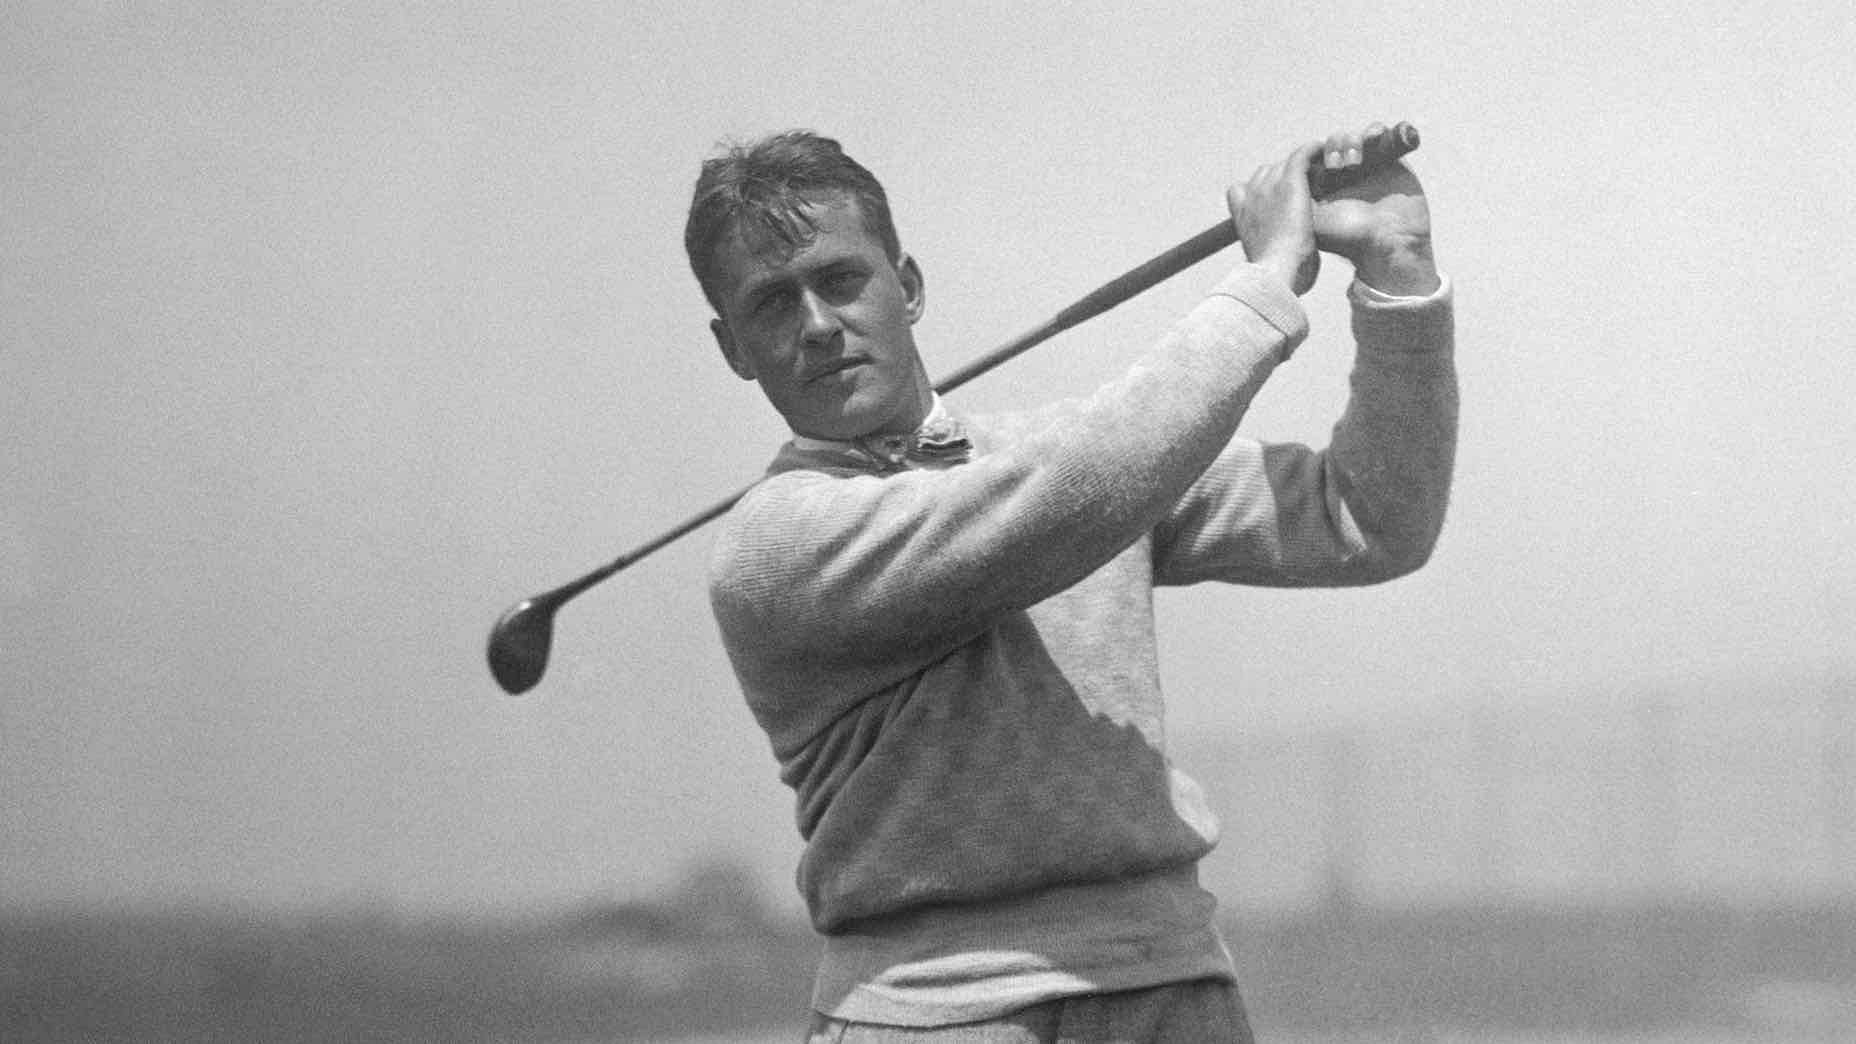 Bobby Jones (Image via Golf.com)